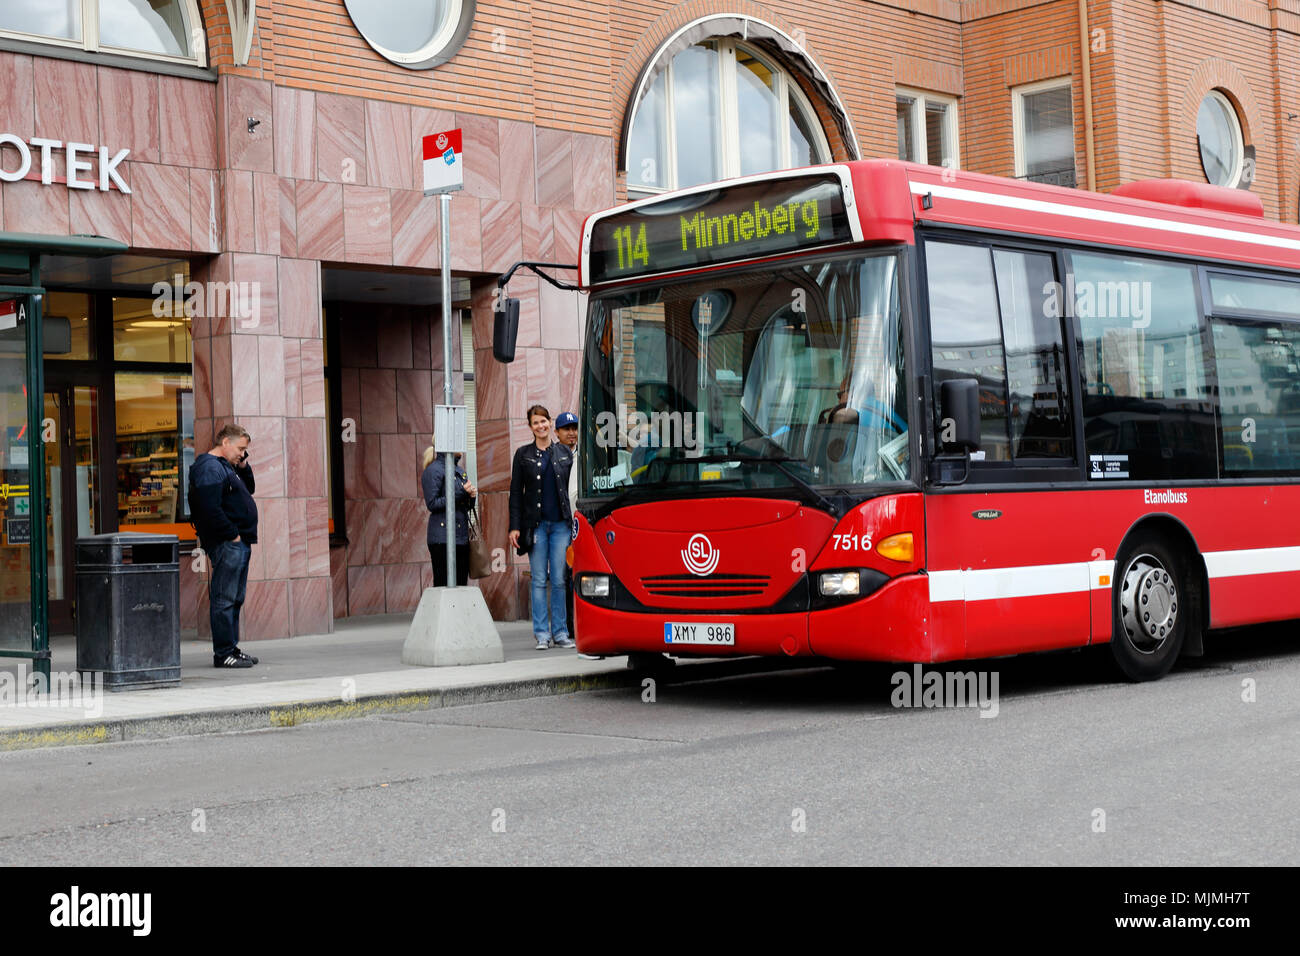 Stockholm, Schweden, 23. Mai 2017: Eine rote Stockholm öffentliche Verkehrsmittel (SL) Bus in Dienst auf der Linie 114 mit Ziel Minneberg zur Haltestelle Alvik. Stockfoto